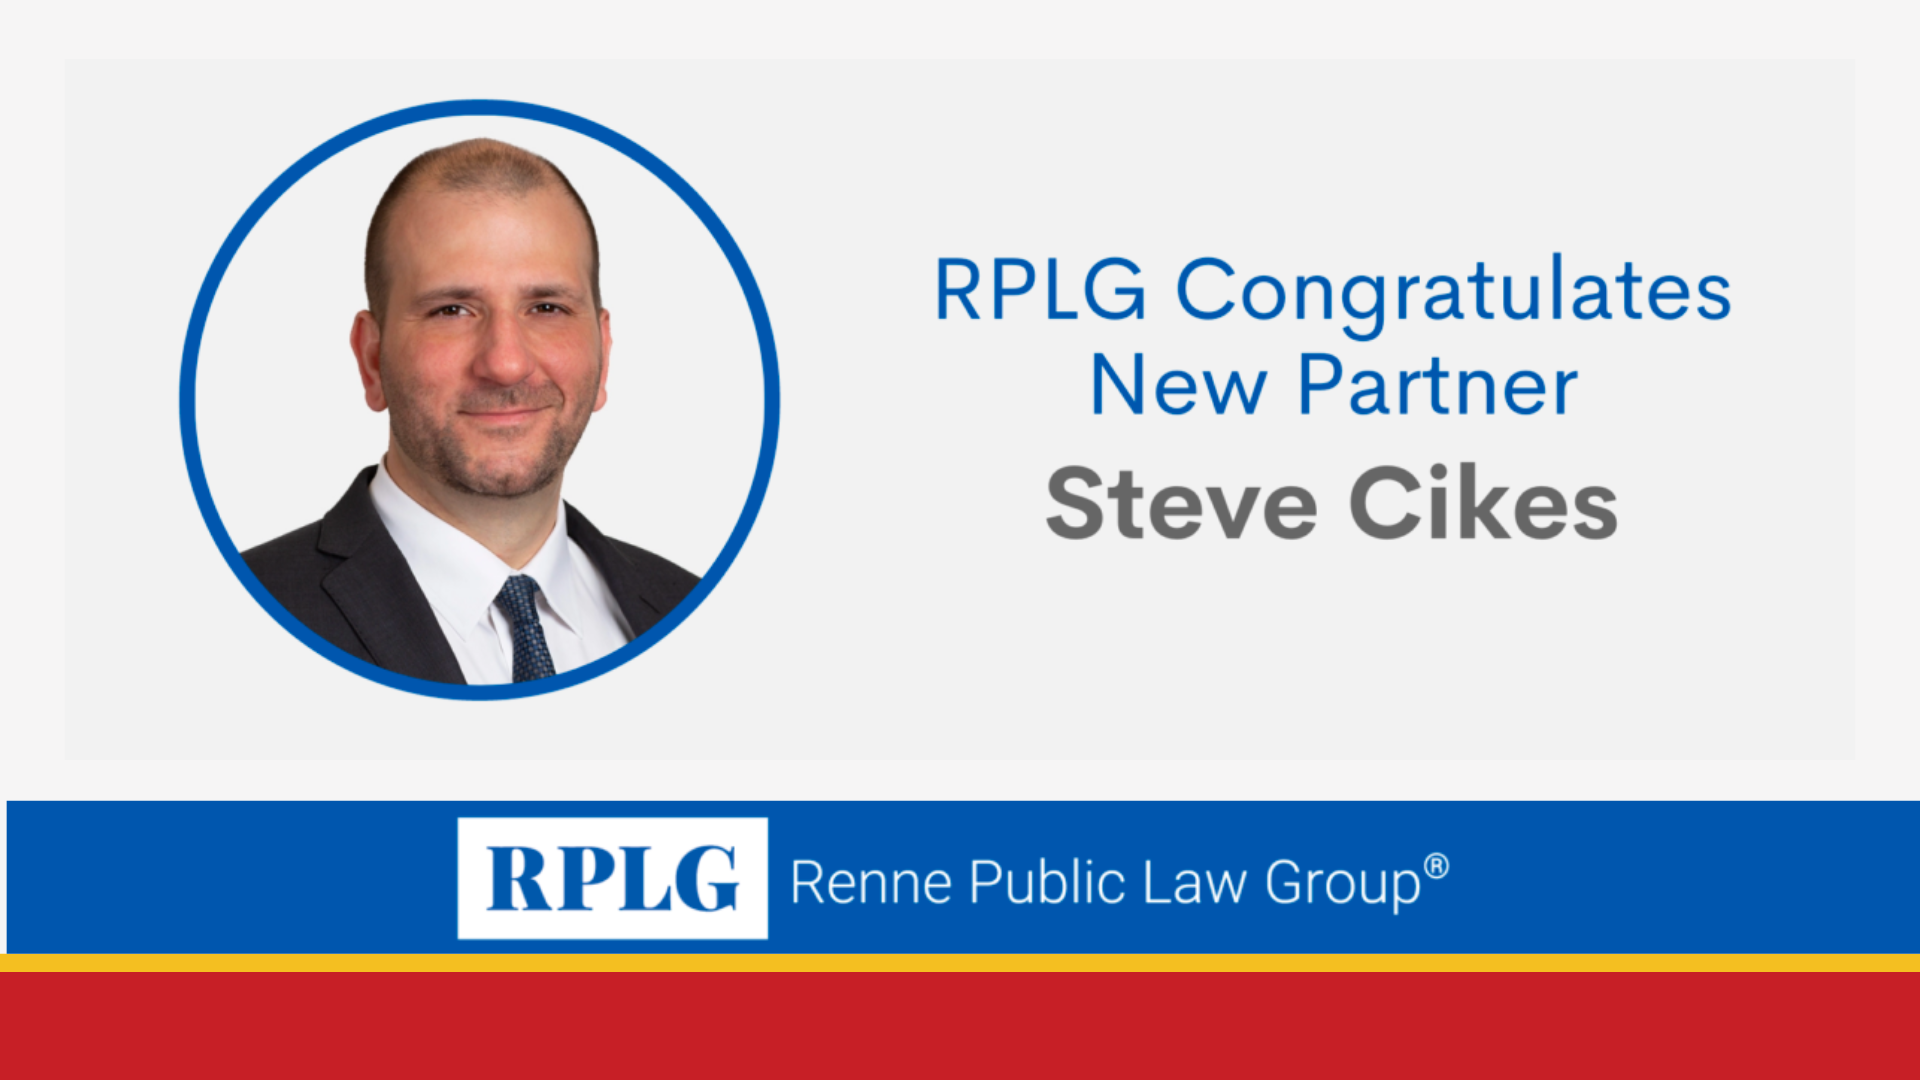 RPLG Partner Steve Cikes